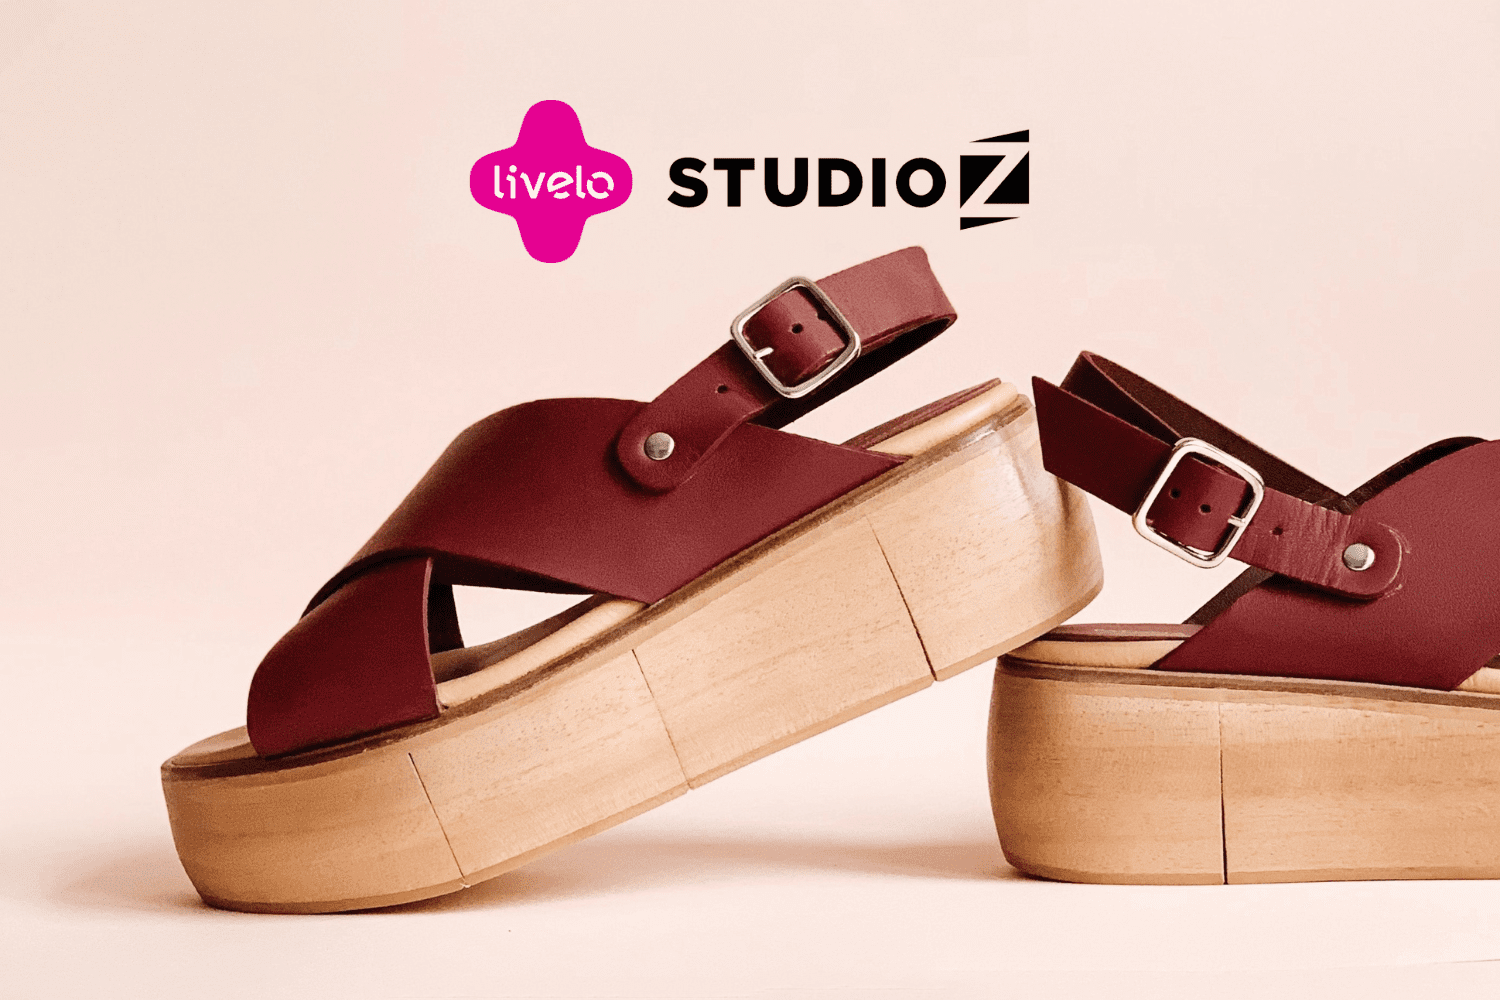 sapato com fundo rosa com logo Livelo e Studio Z